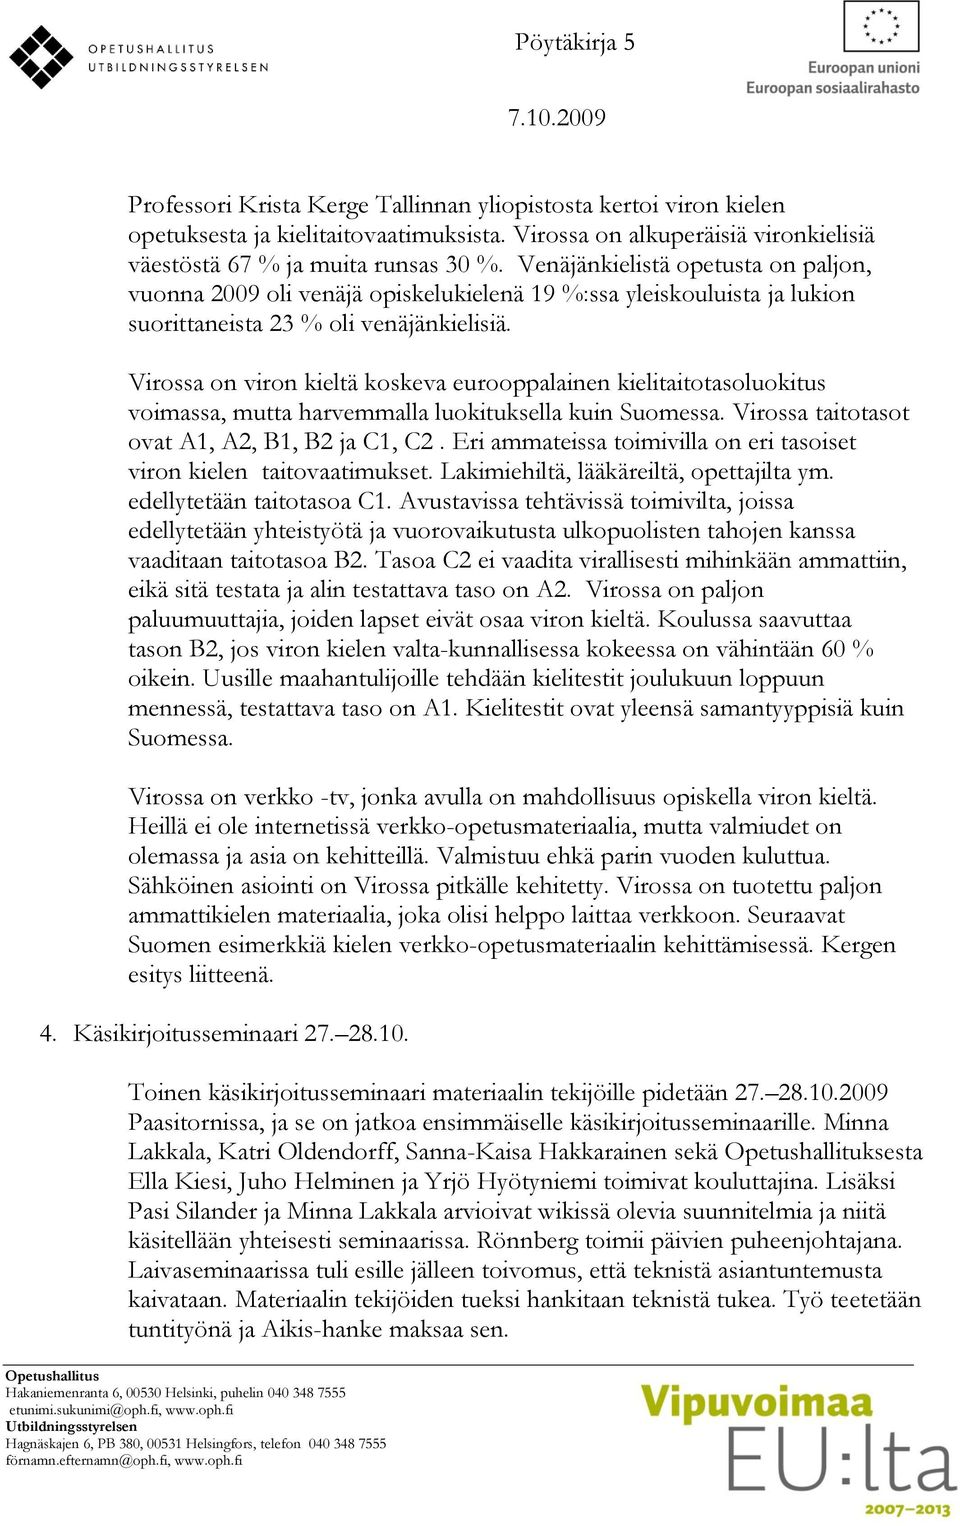 Virossa on viron kieltä koskeva eurooppalainen kielitaitotasoluokitus voimassa, mutta harvemmalla luokituksella kuin Suomessa. Virossa taitotasot ovat A1, A2, B1, B2 ja C1, C2.